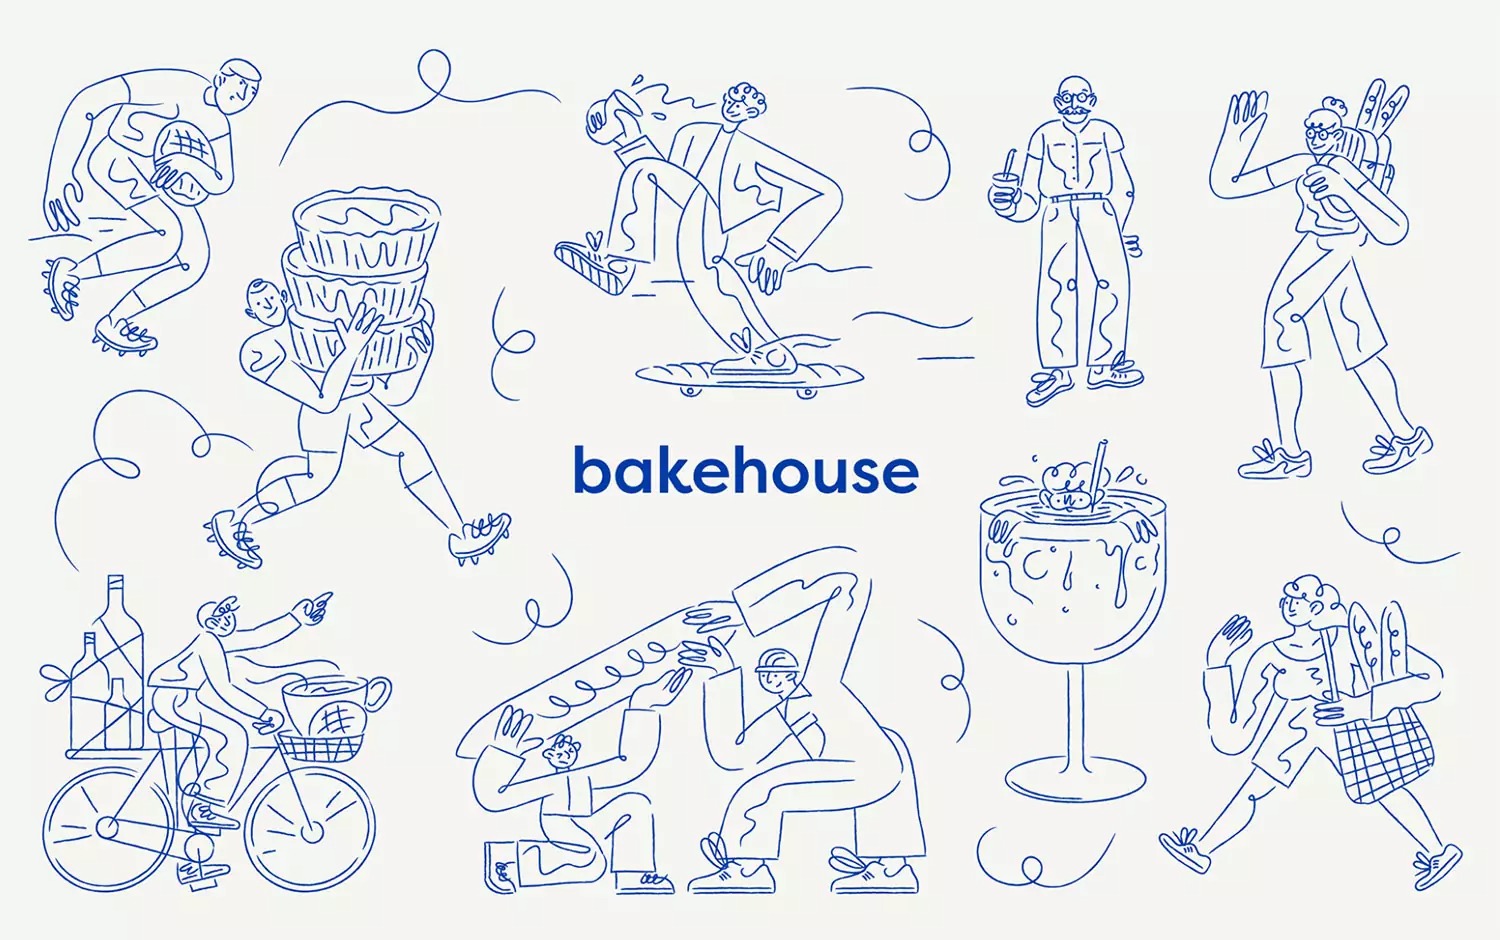 Bakehouse面包房视觉VI设计